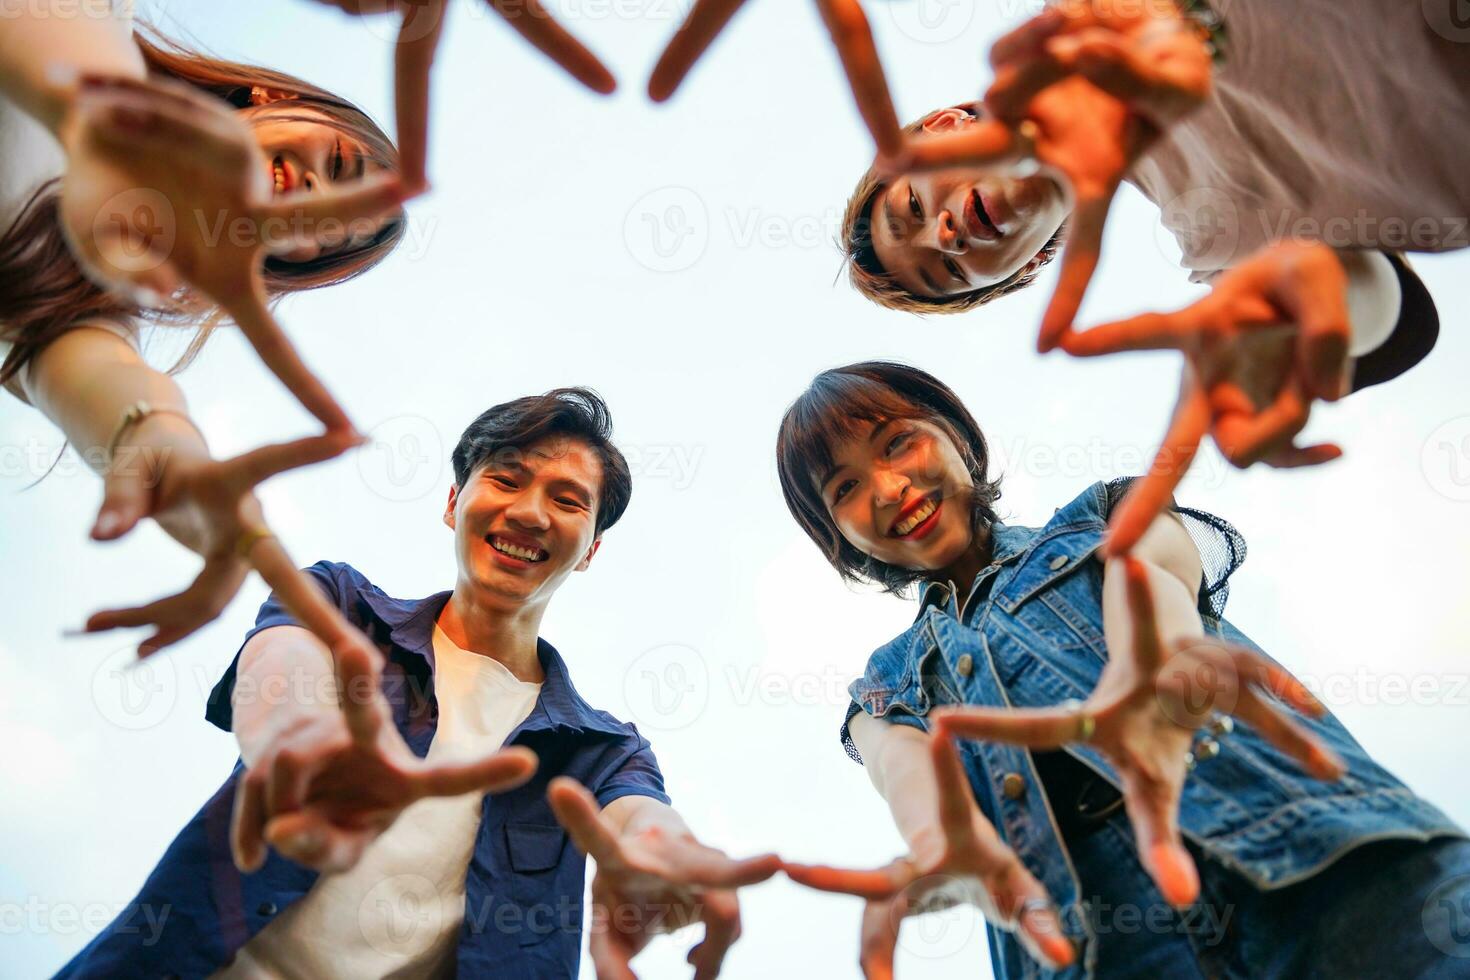 imagen de un grupo de joven asiático personas riendo felizmente juntos foto